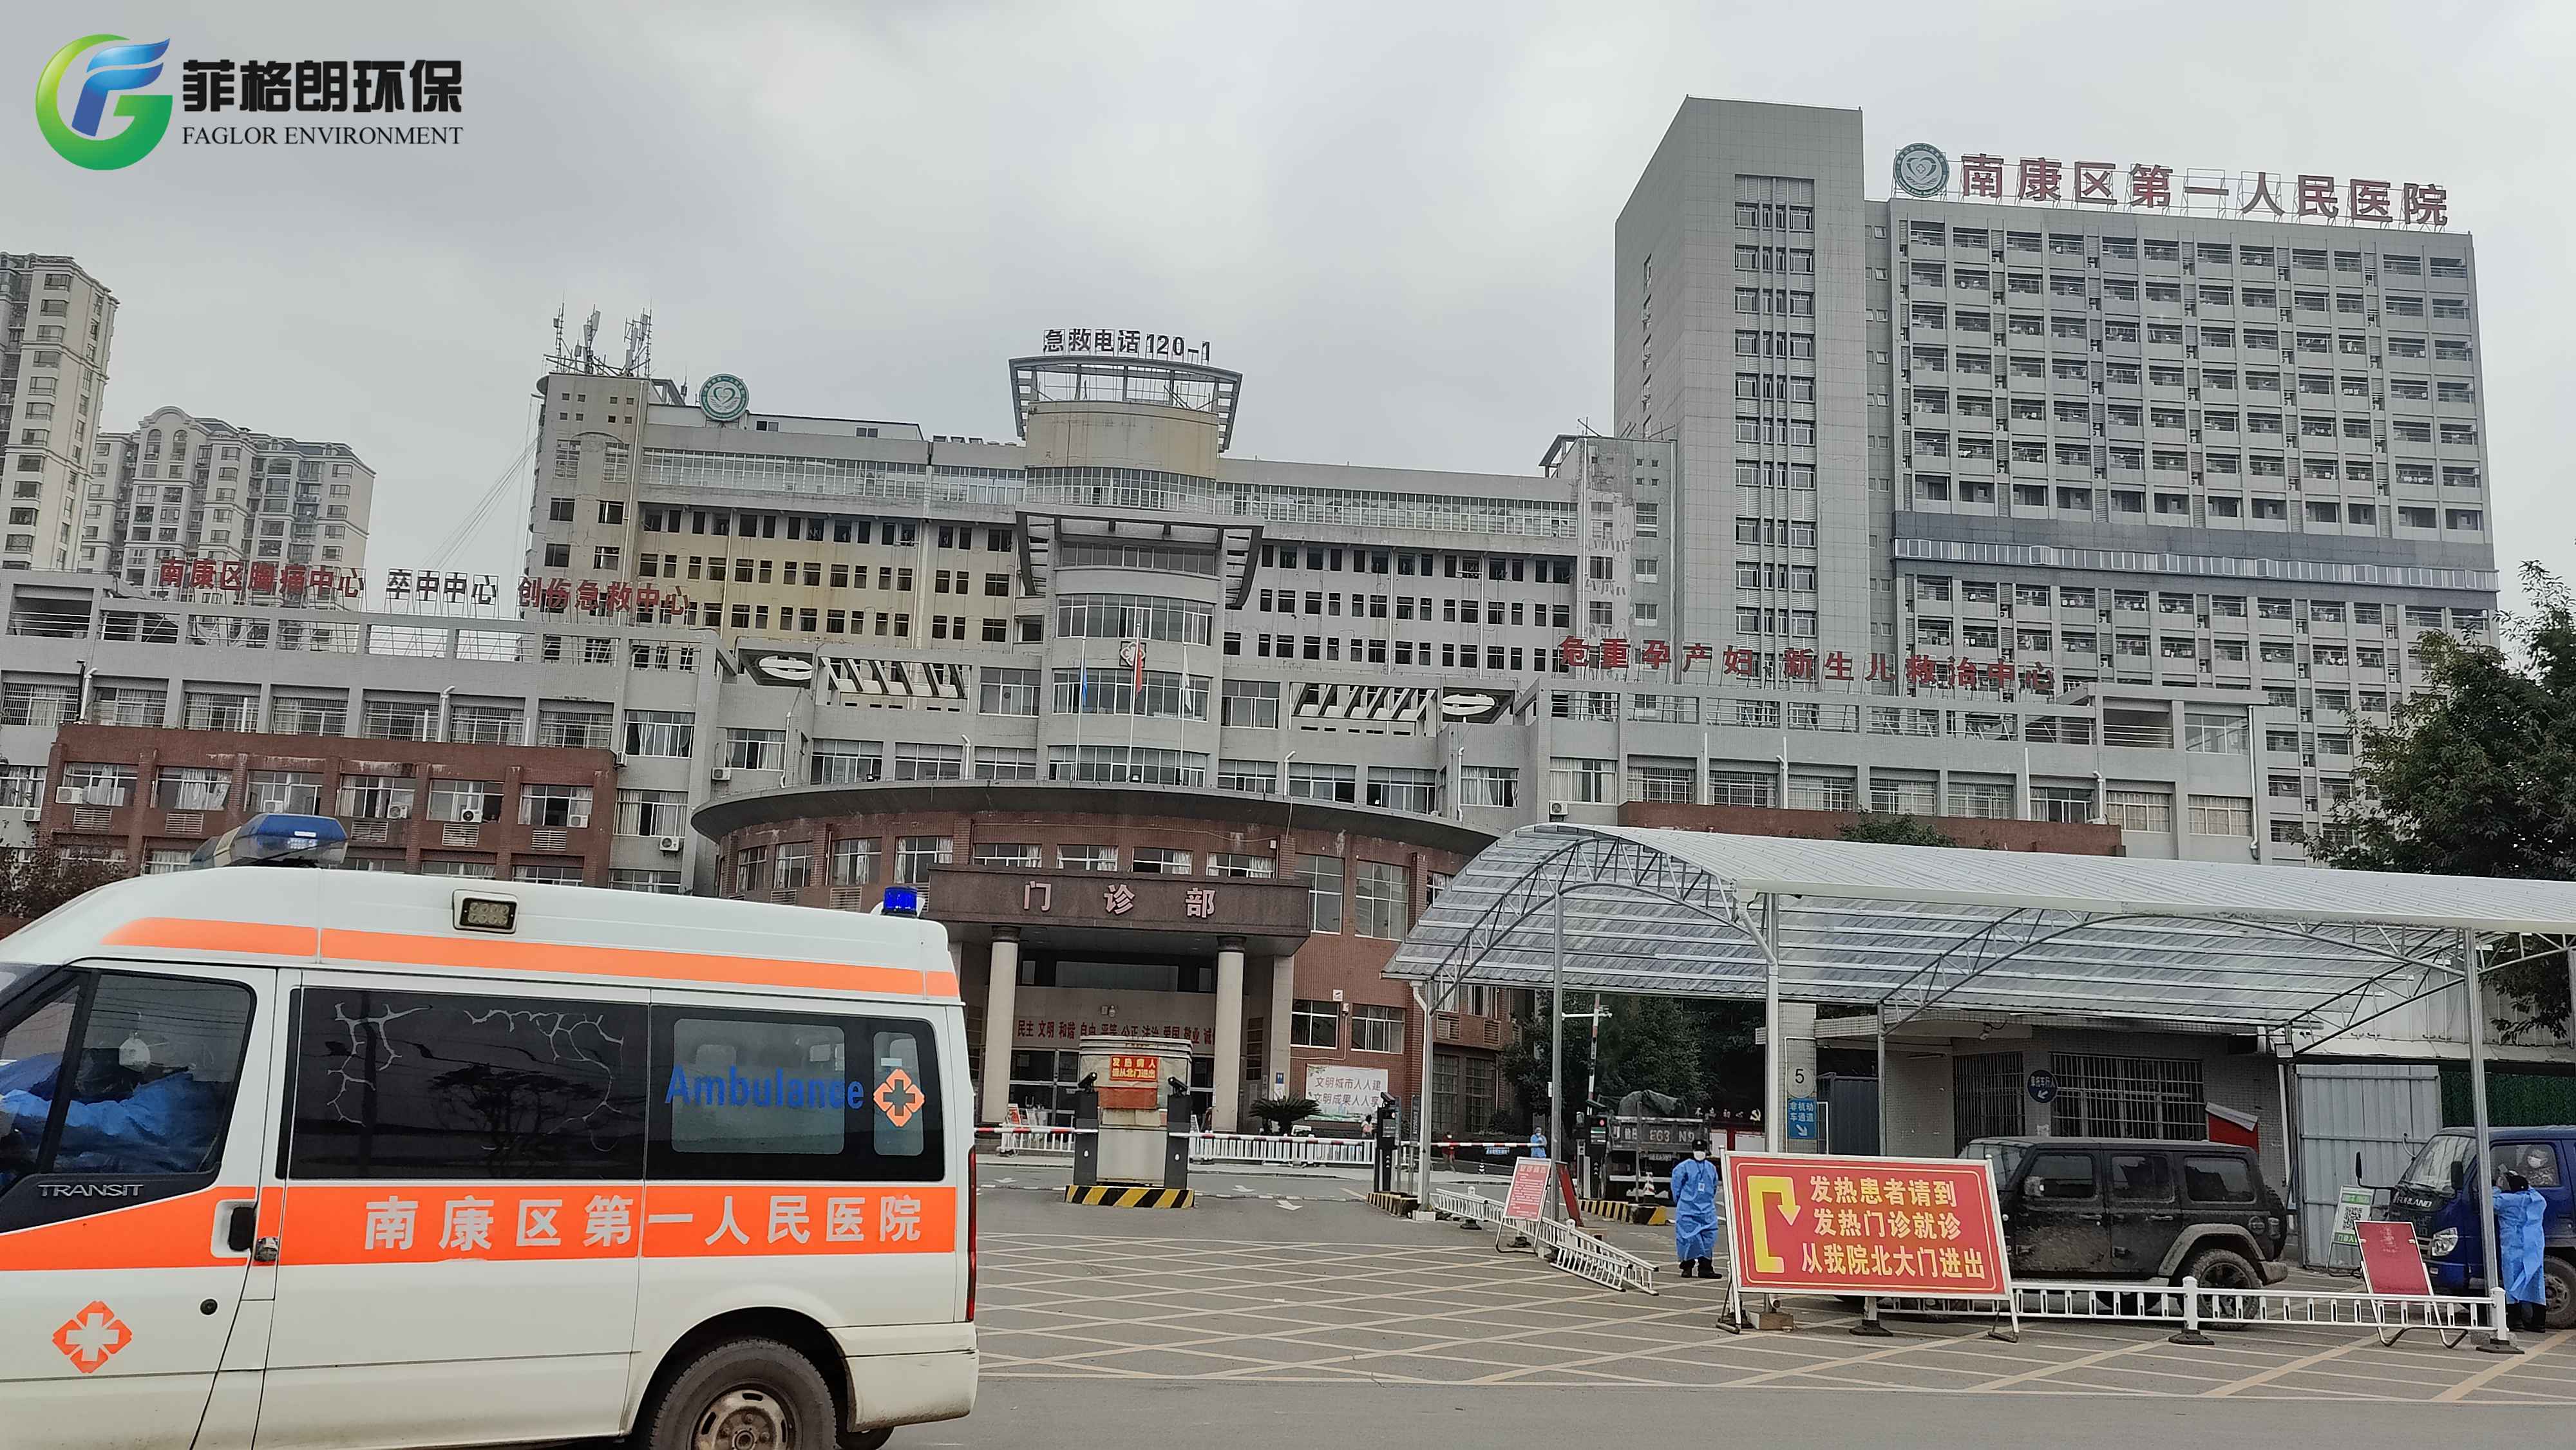 江西赣州南康区第一人民医院双车道菲格朗救护车洗消系统顺利插图